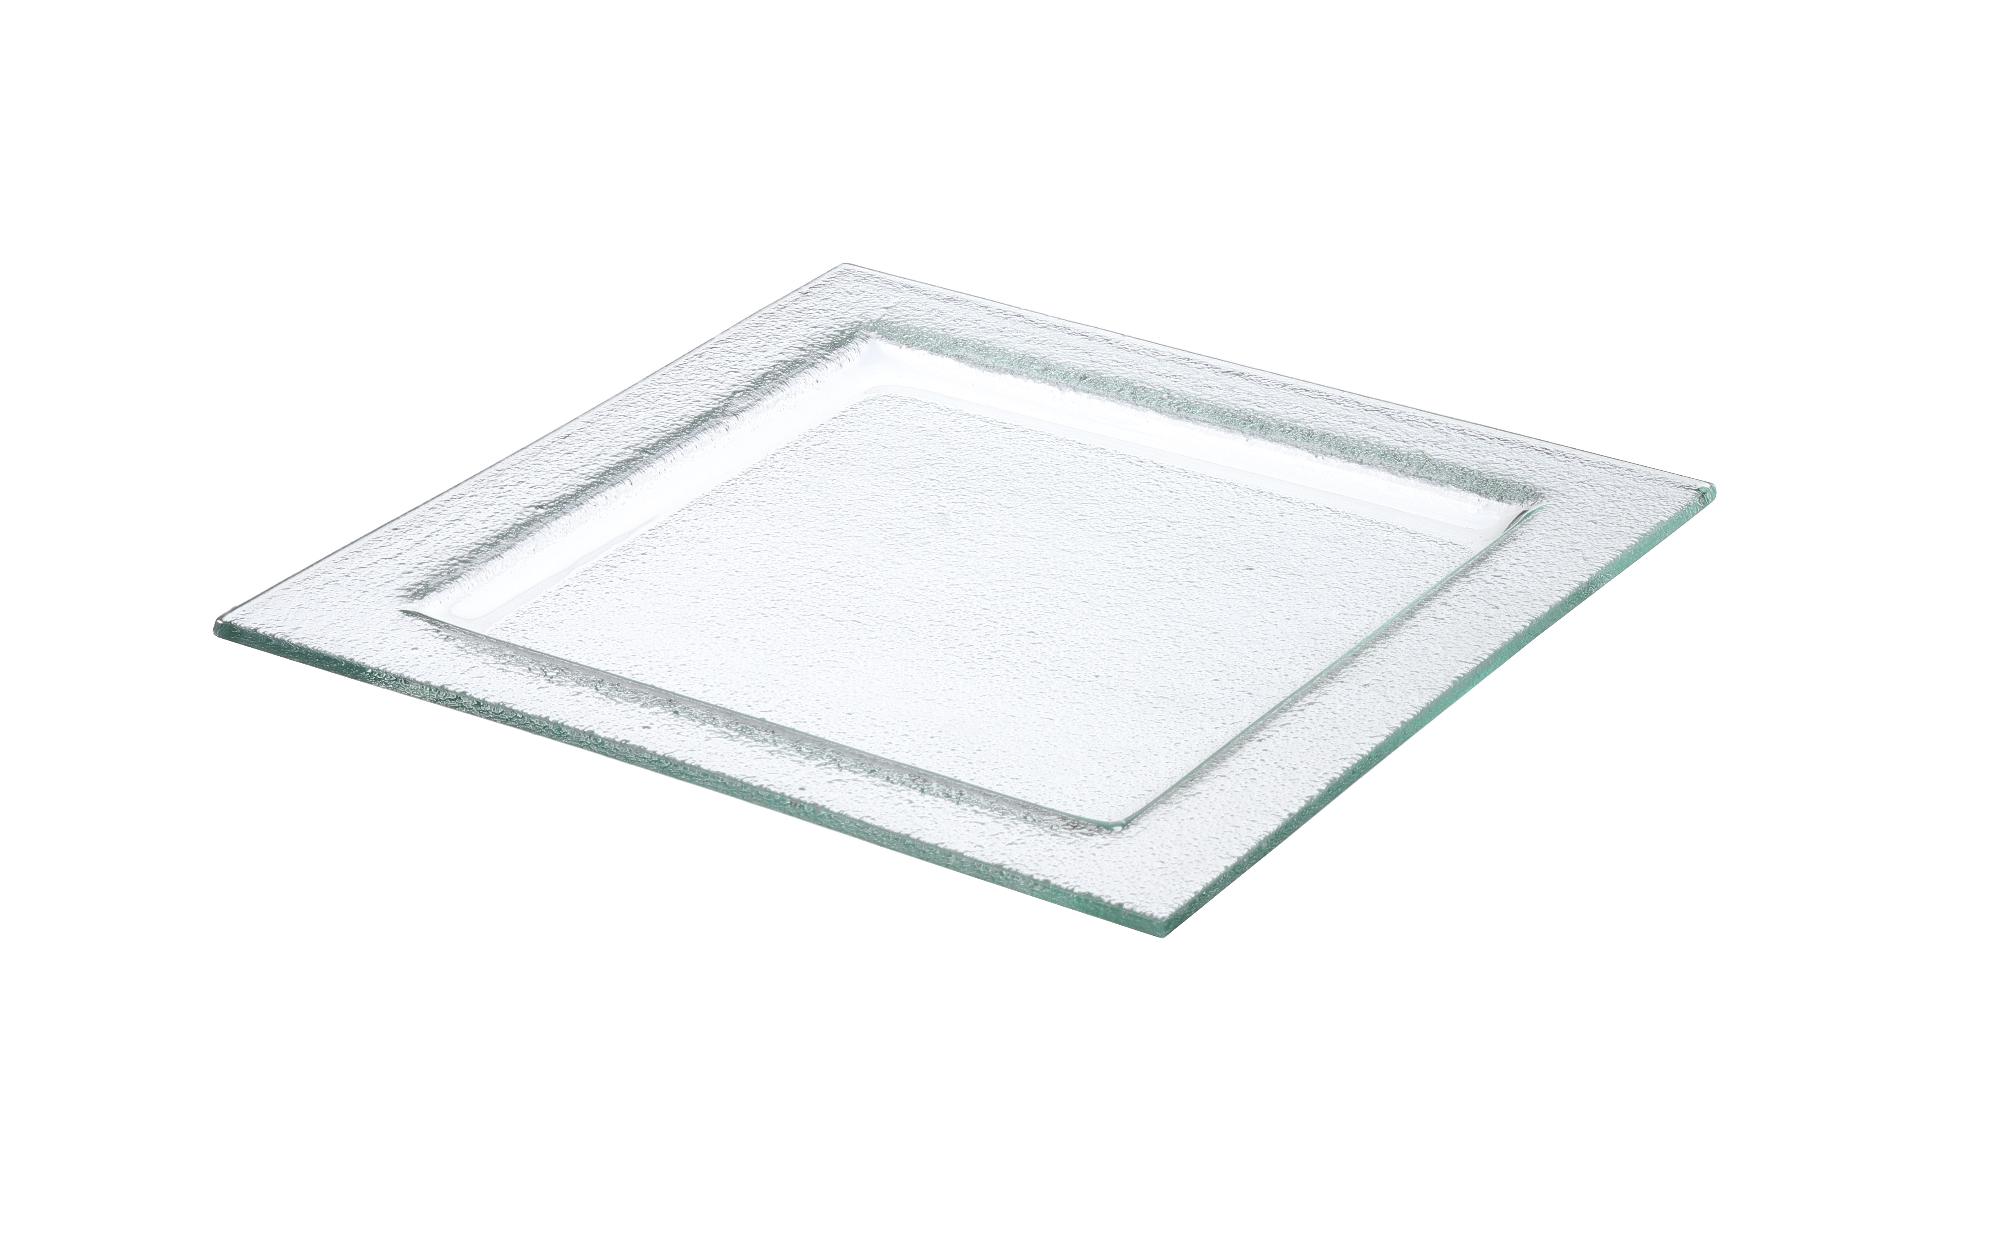 Vetro glass square tray, 300x300mm